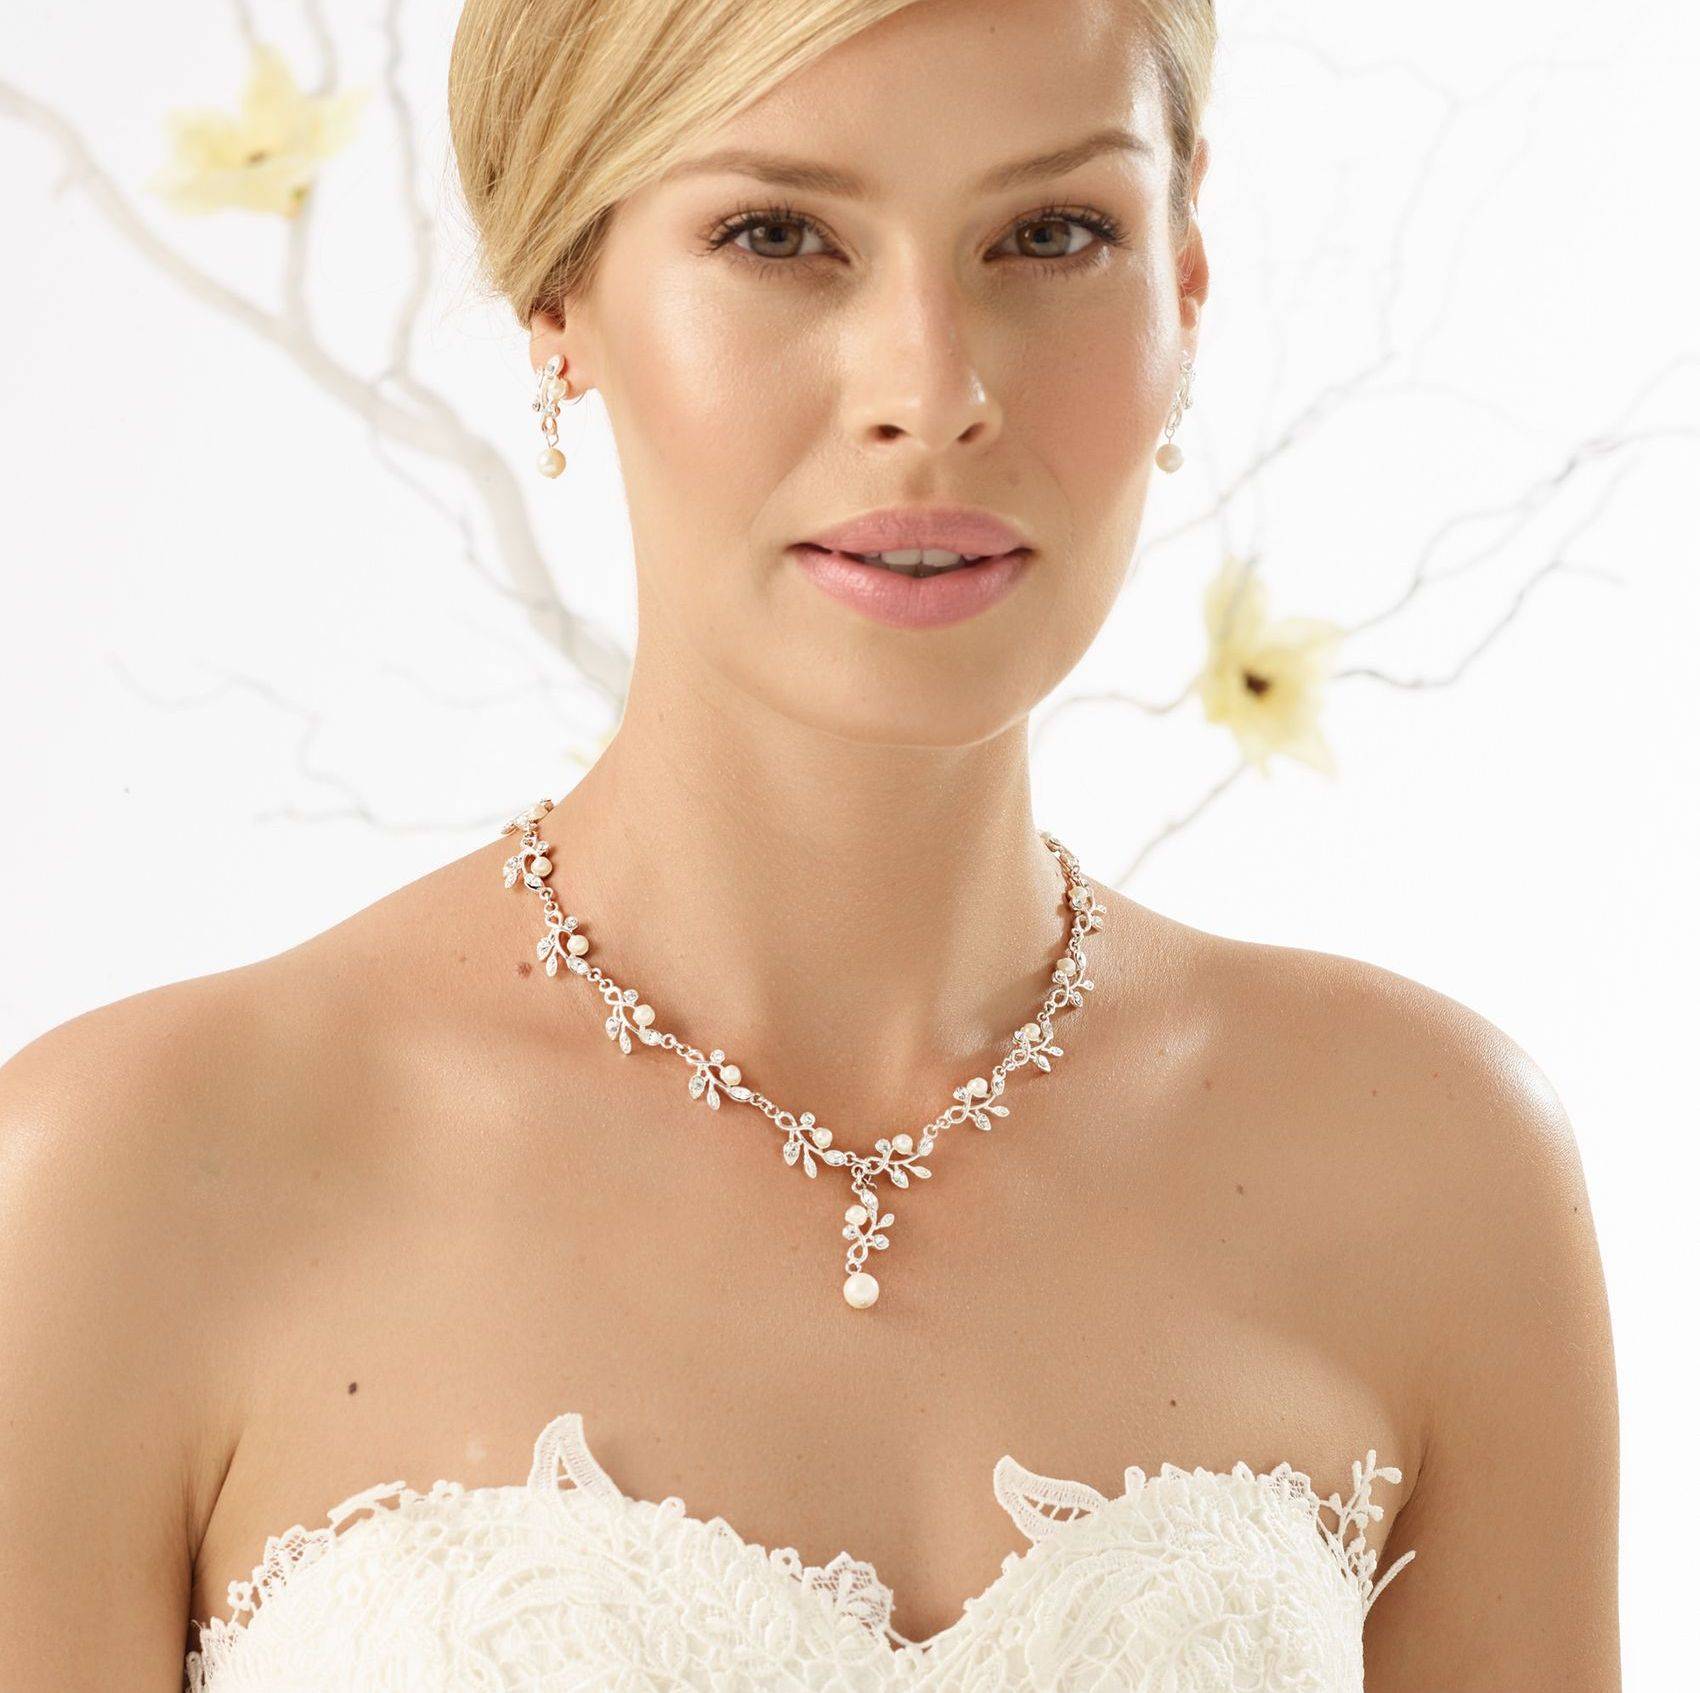 Ювелирные украшения для невесты: что надеть на свадьбу на шею, руки и уши?